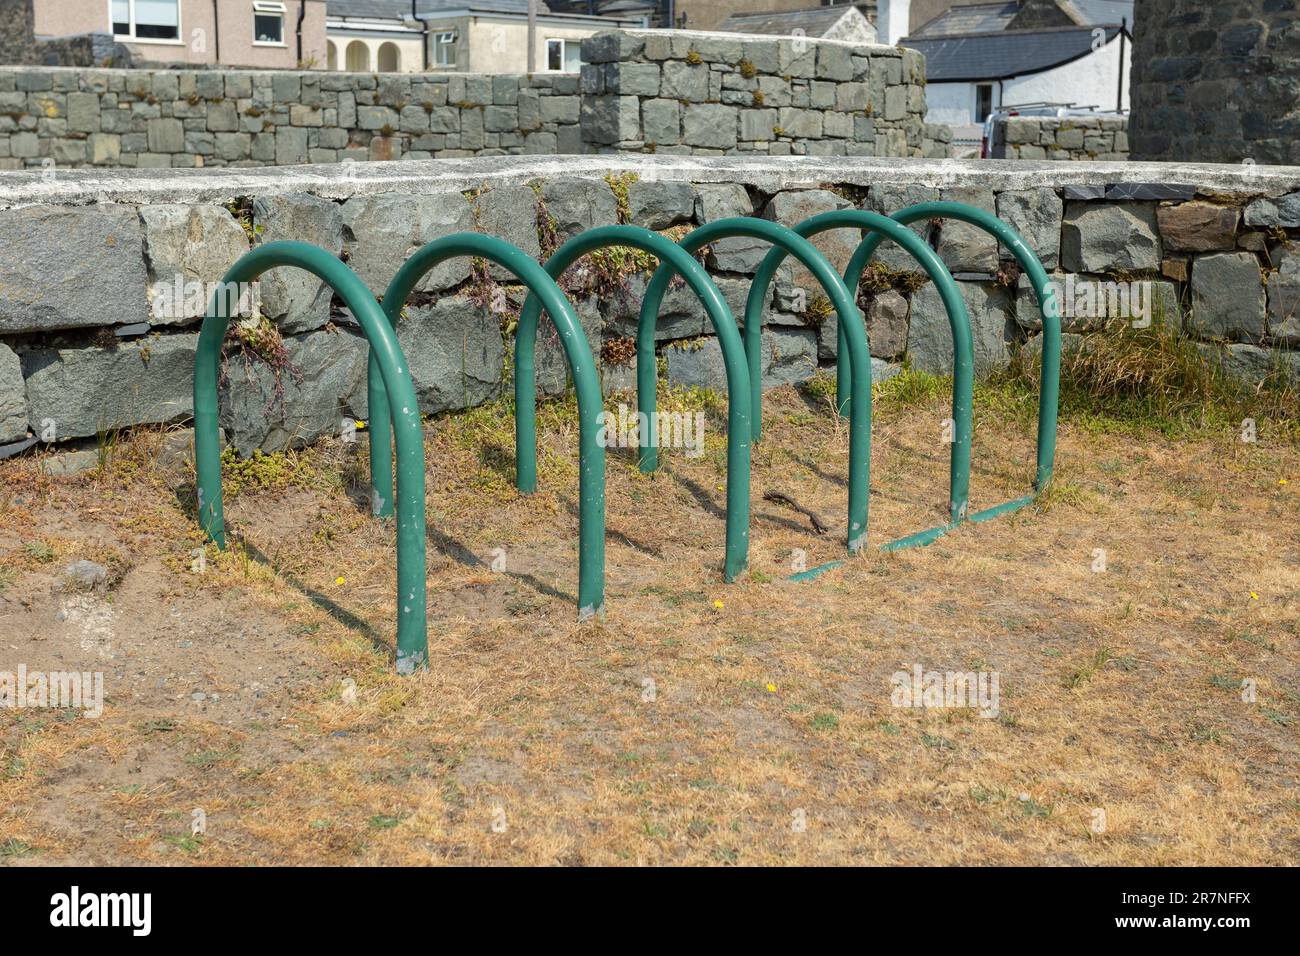 Fahrradständer aus grünem Metall oder Ständer auf festem Untergrund neben Rasen Stockfoto